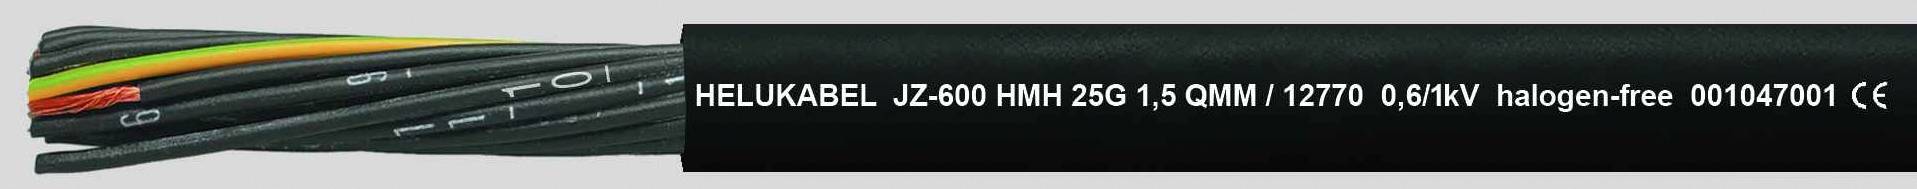 HELUKABEL JZ-600 HMH Steuerleitung 3 G 1.50 mm² Schwarz 12760-500 500 m